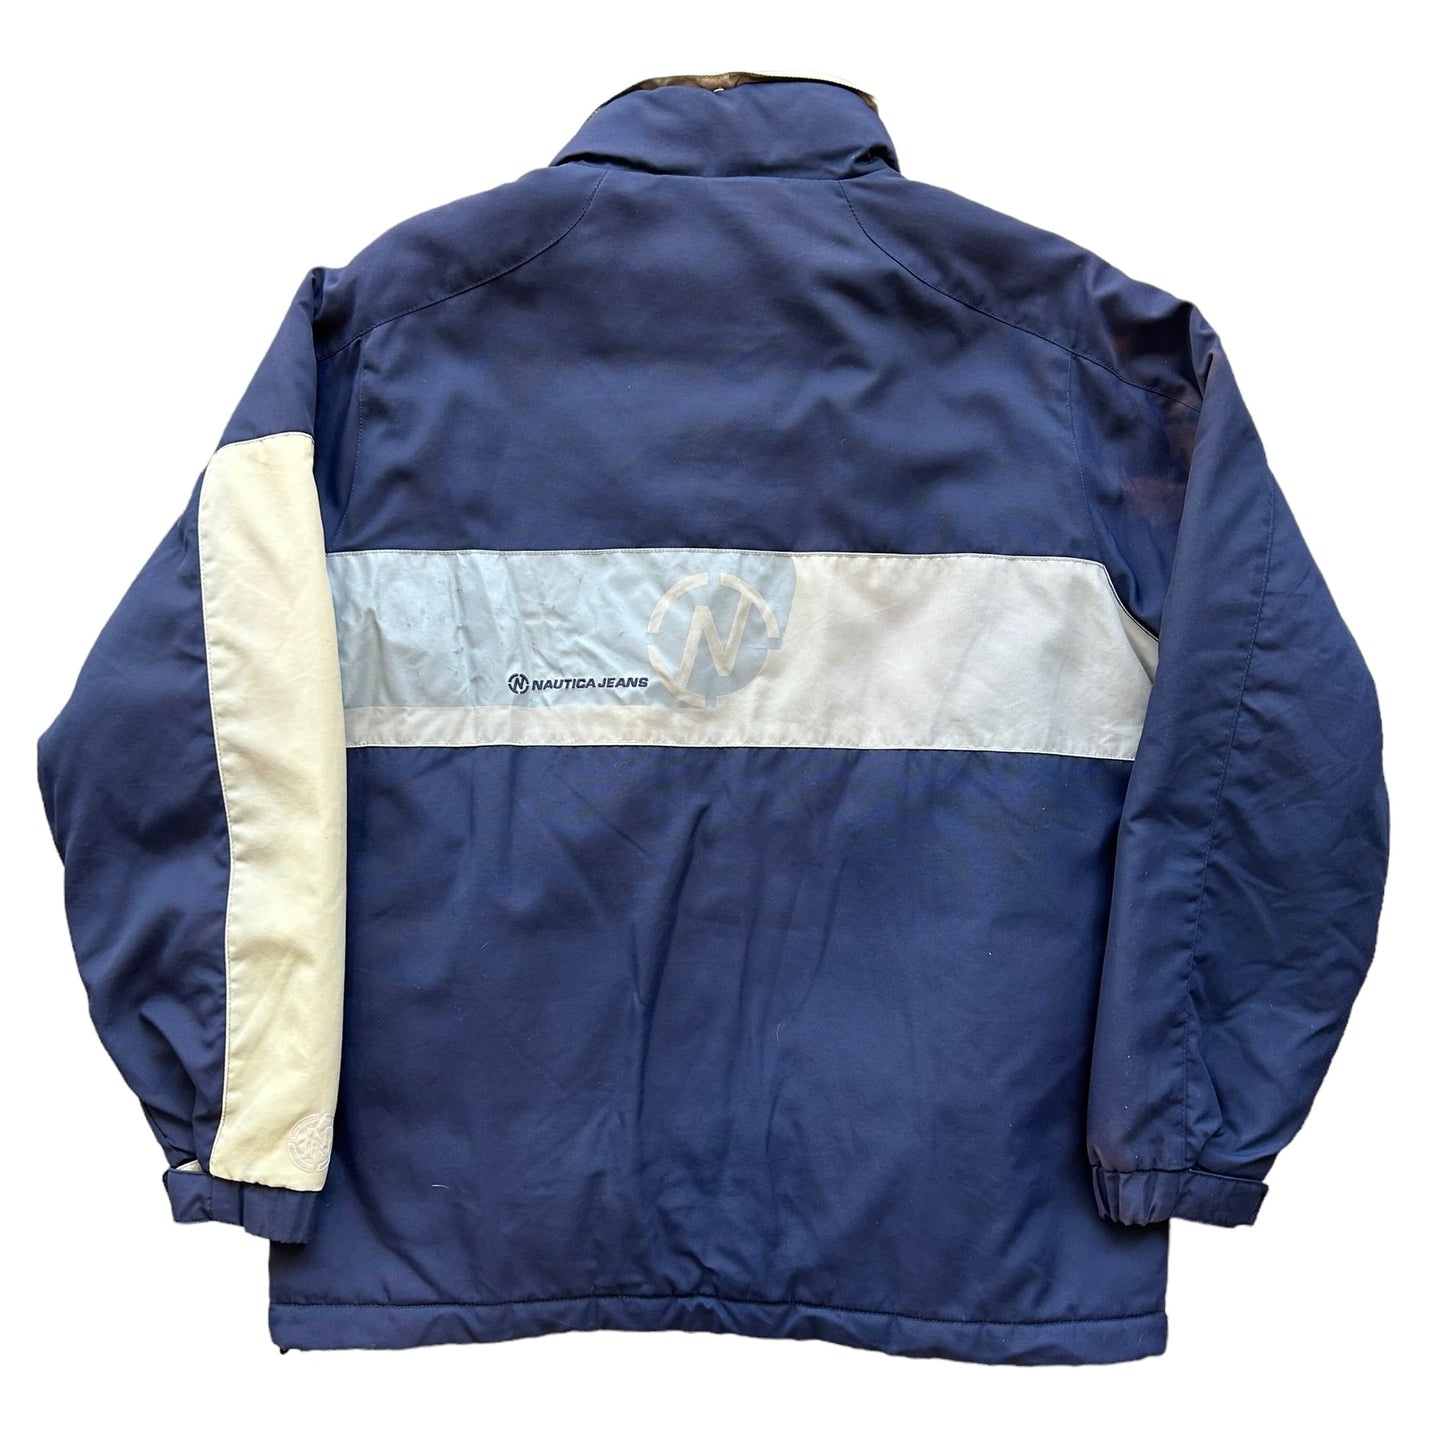 Vintage Nautica Jacket